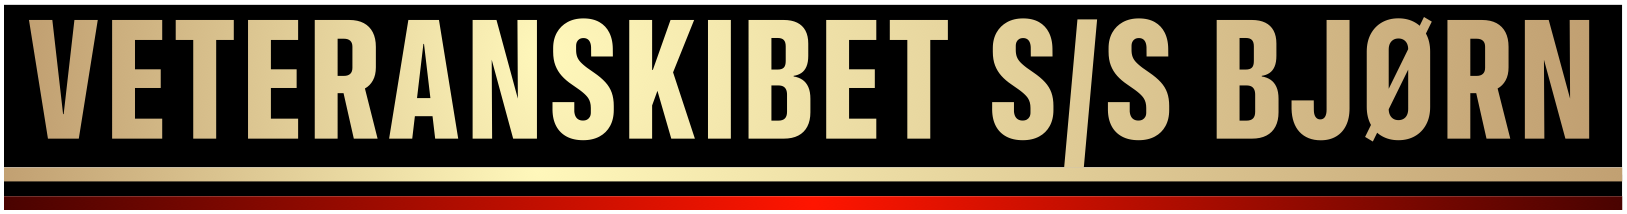 veteranskibet ss bjørn logo